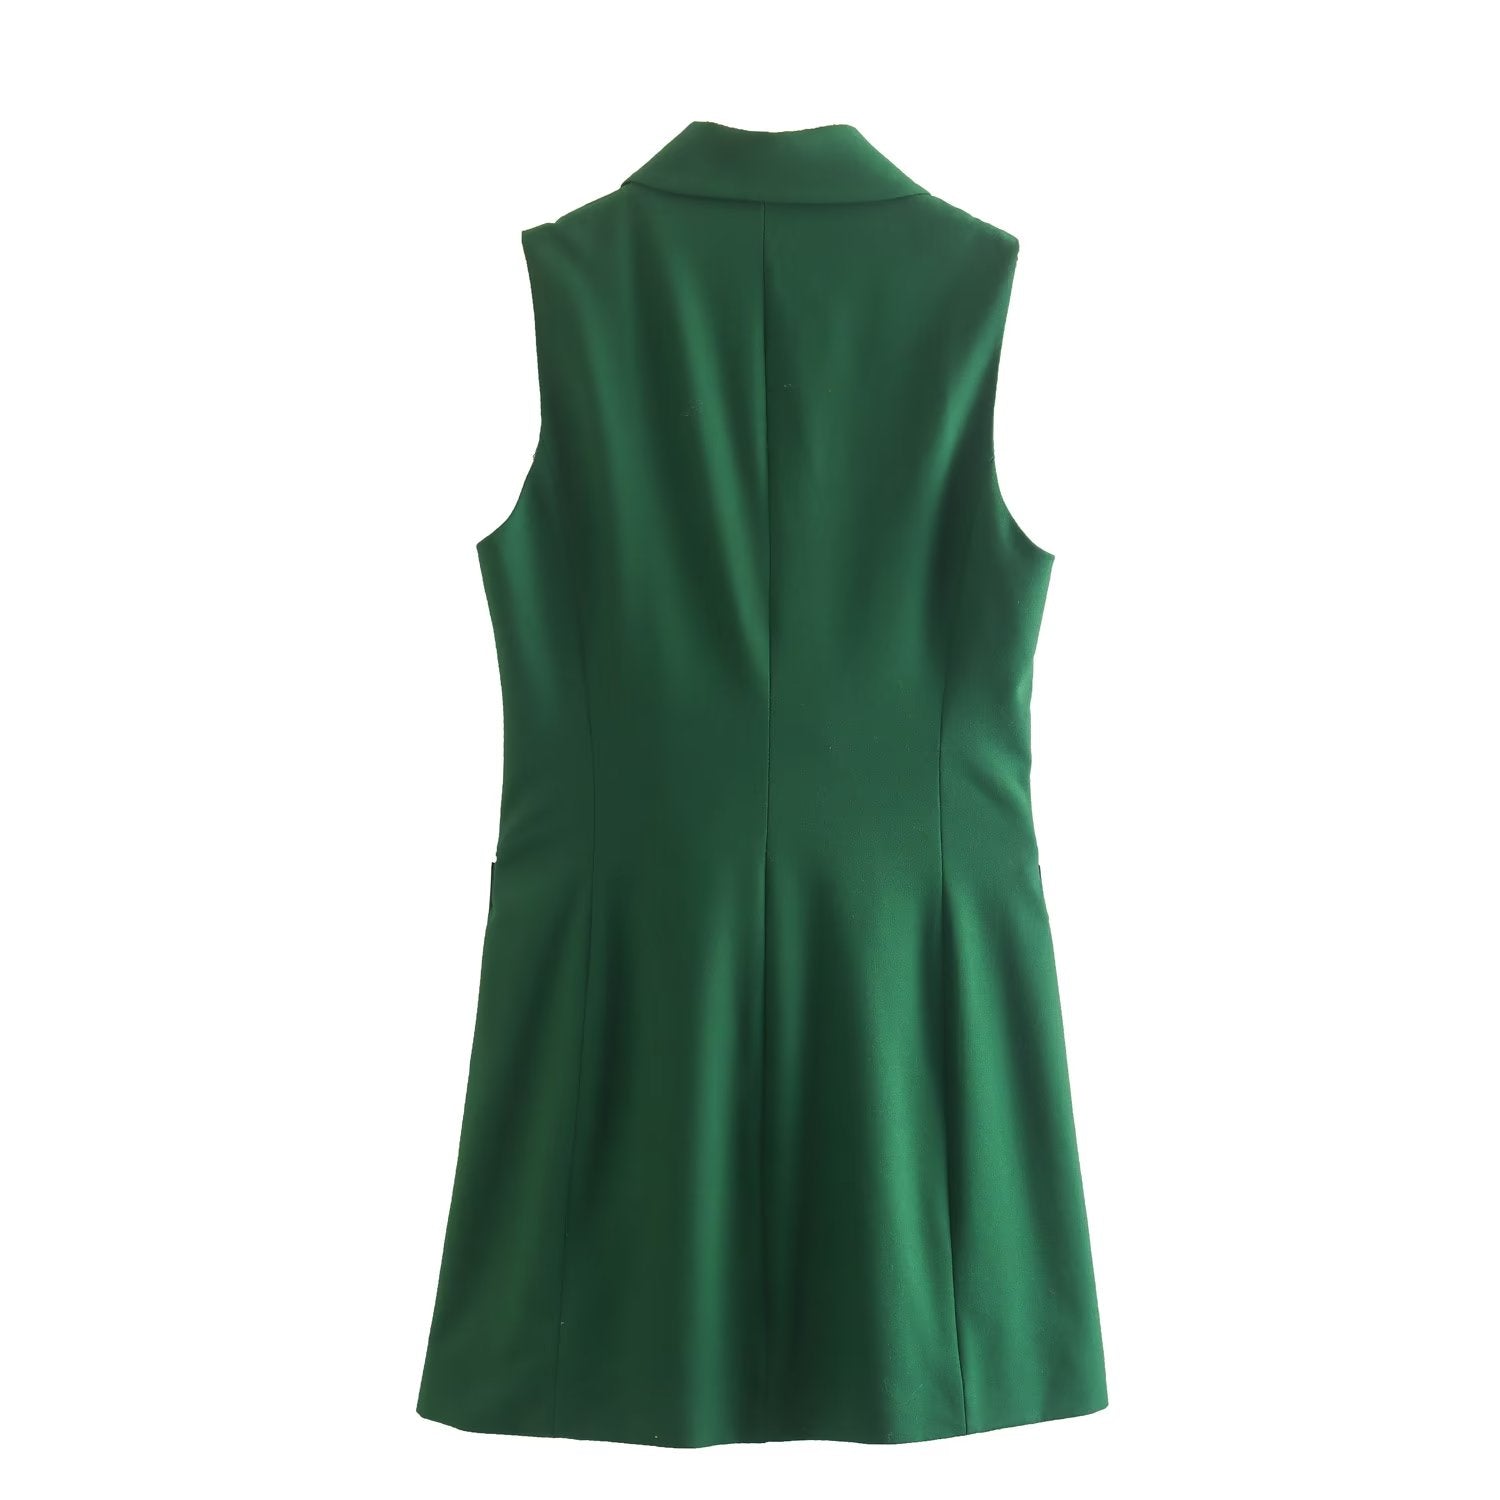 Summer Elegant Collared Sleeveless Belt Green Vest Women